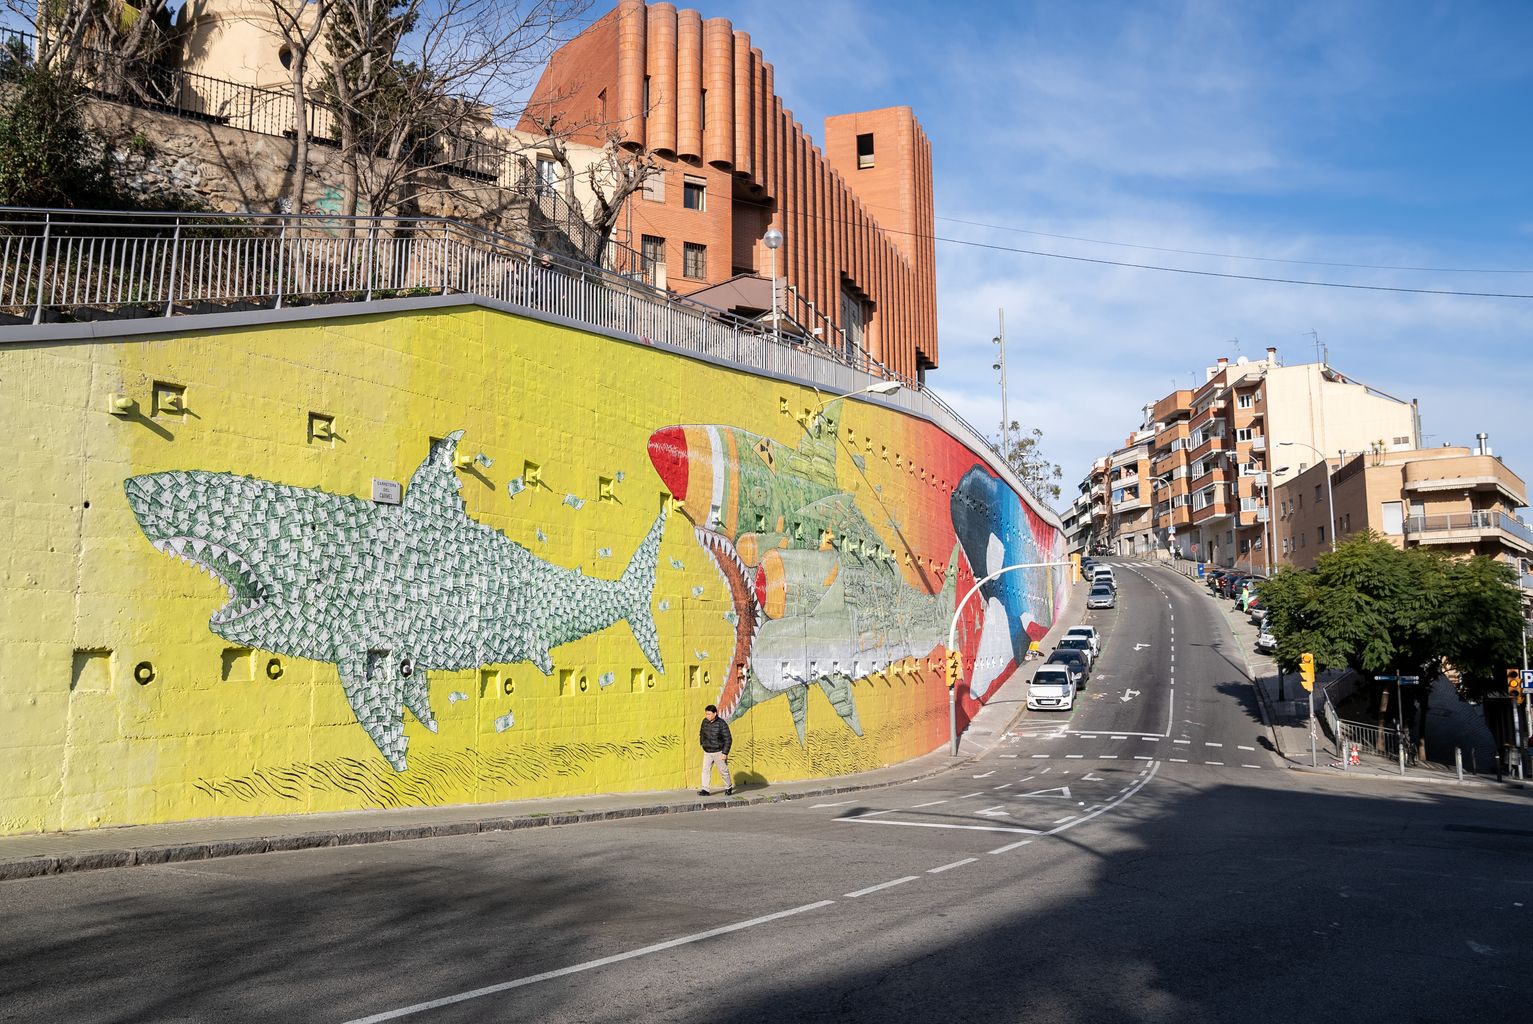 Nou mural de l'artista italià BLU al barri del Carmel de Barcelona, que representa un tauró fet de bitllets (capitalista) a punt de ser devorat per un tauró amb elements bèl·lics, que alhora és a punt de ser devorat per una orca que representa el canvi climàtic.